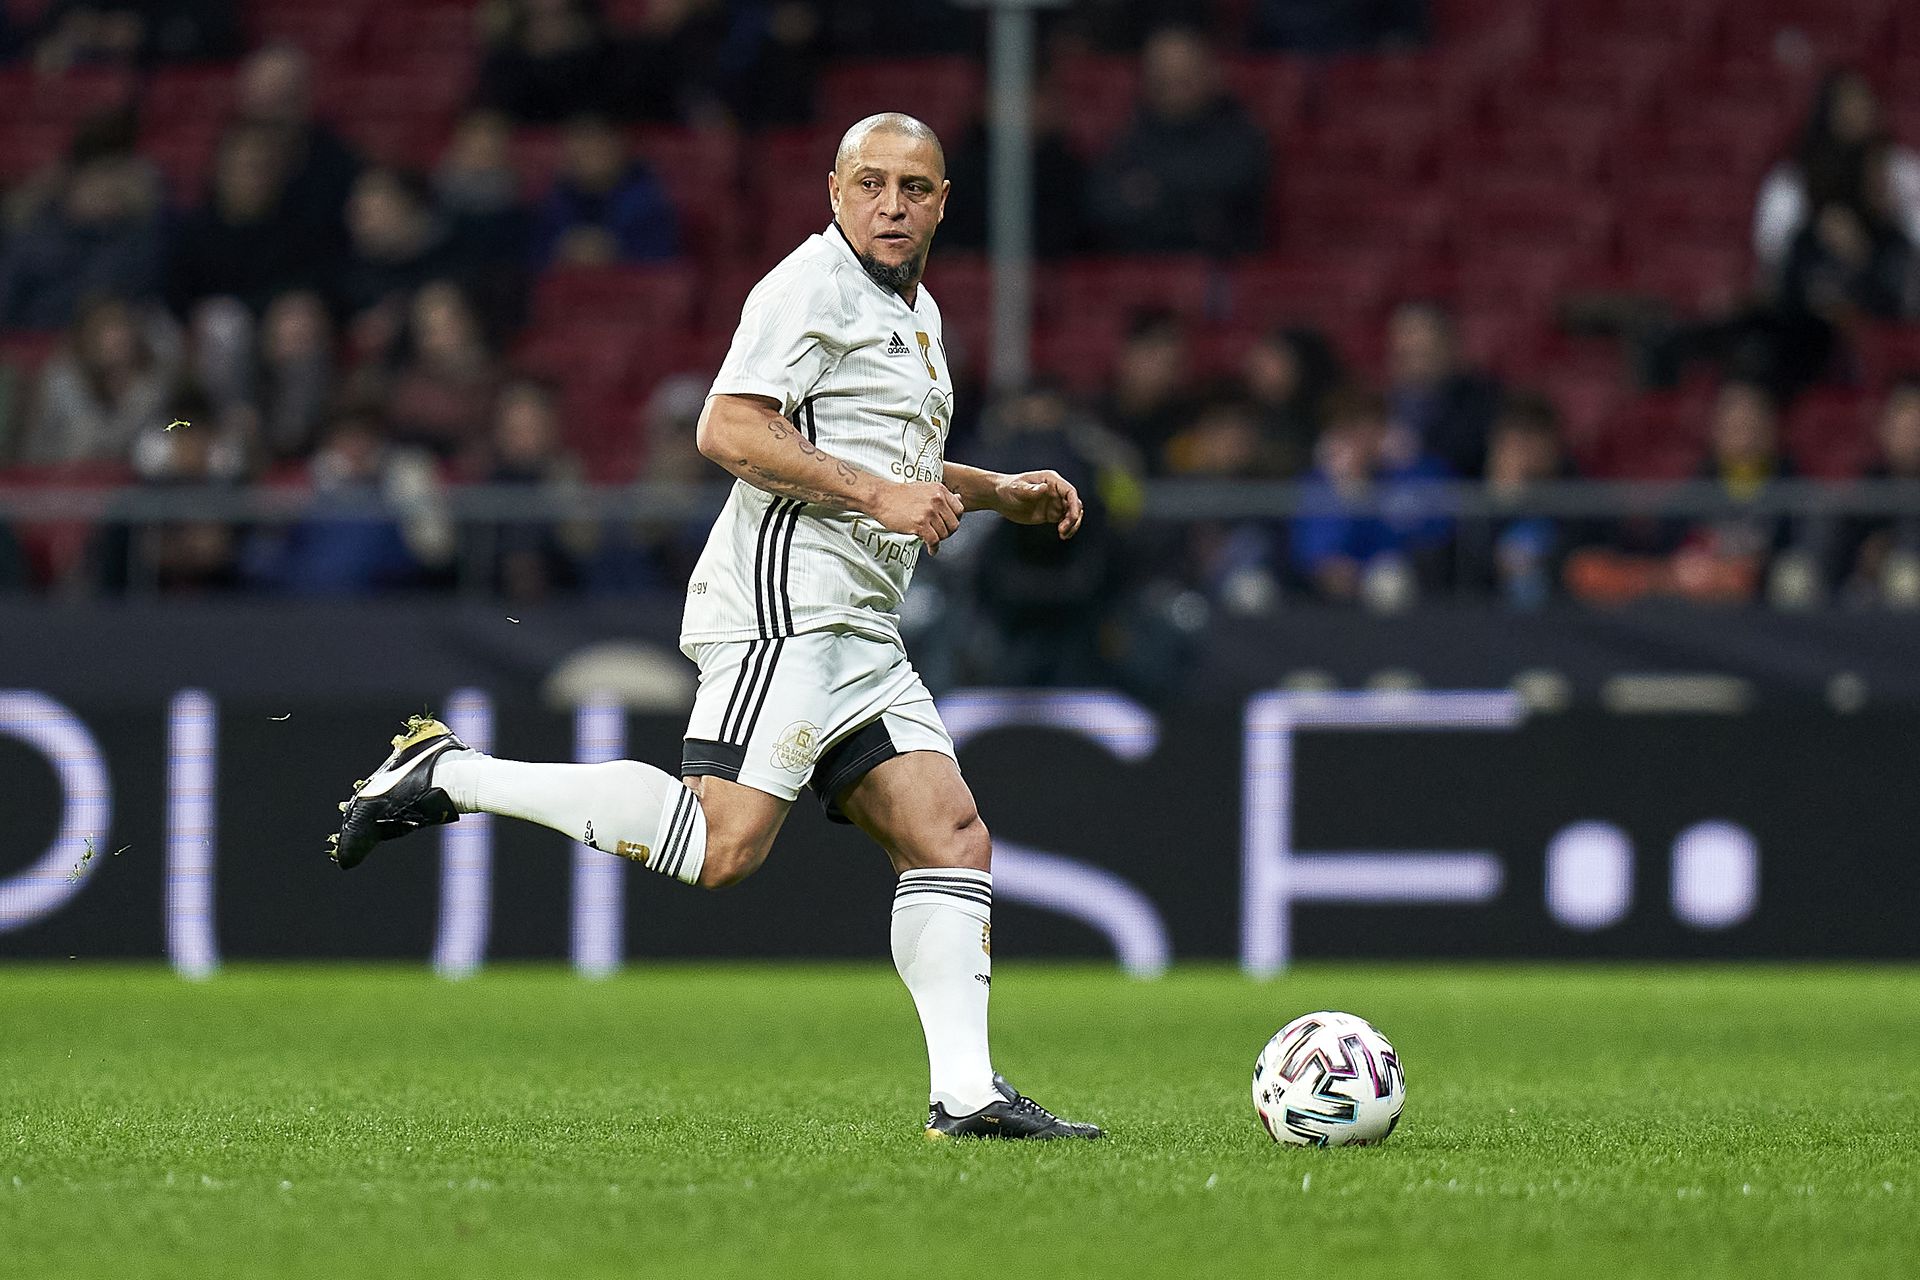 Roberto Carlos háromszor nyert Bajnokok Ligáját a Real Madriddal, a világ egyik legjobb védője volt /Fotó: Getty Images